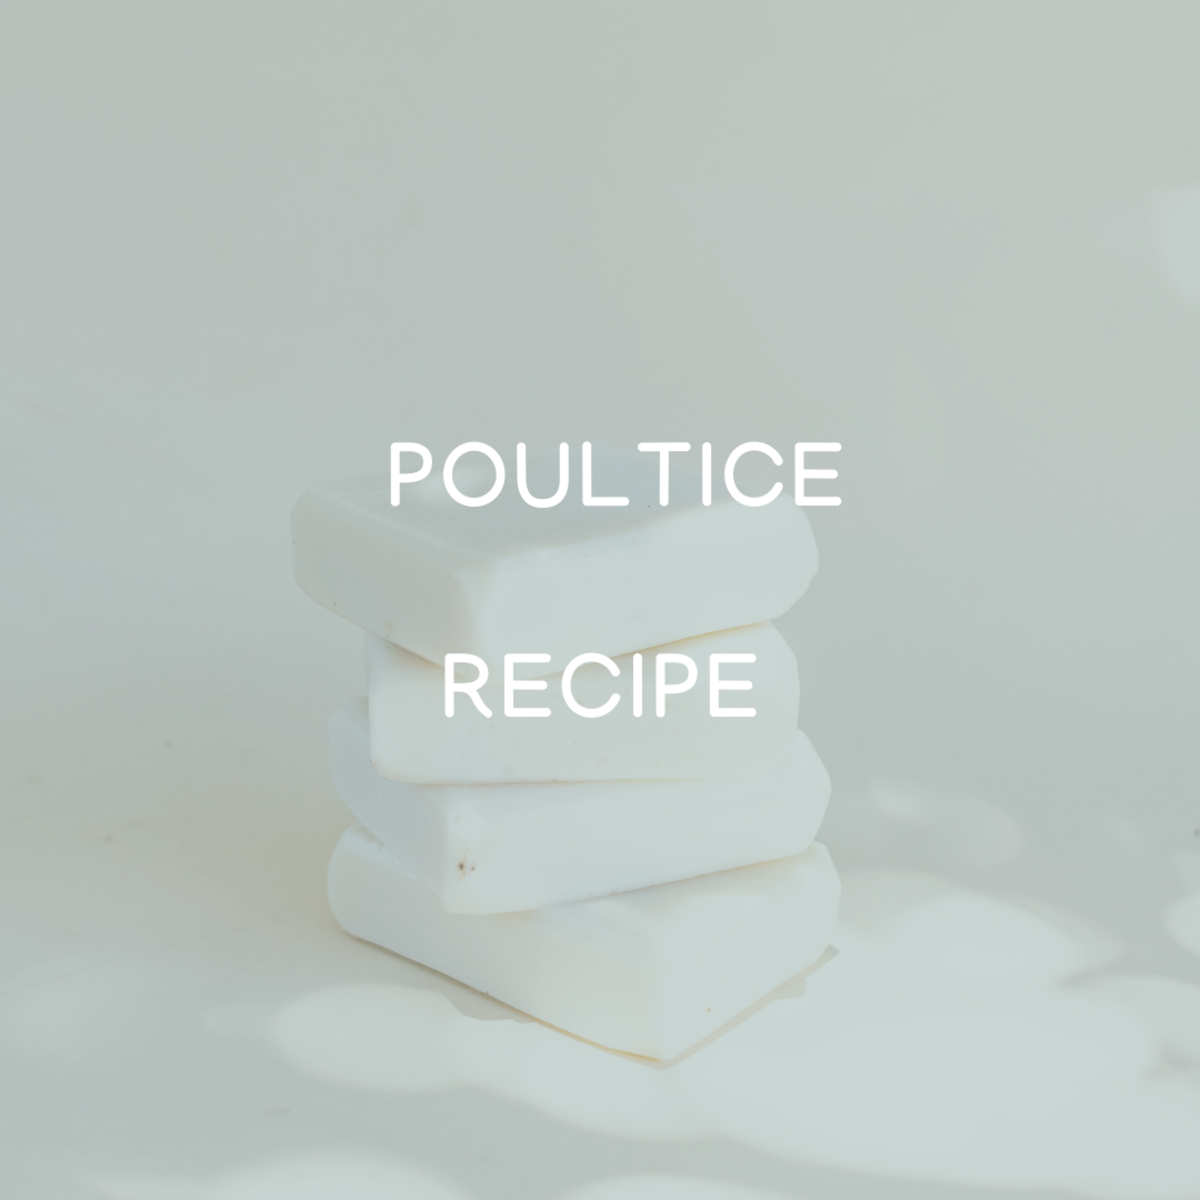 Poultice Recipe